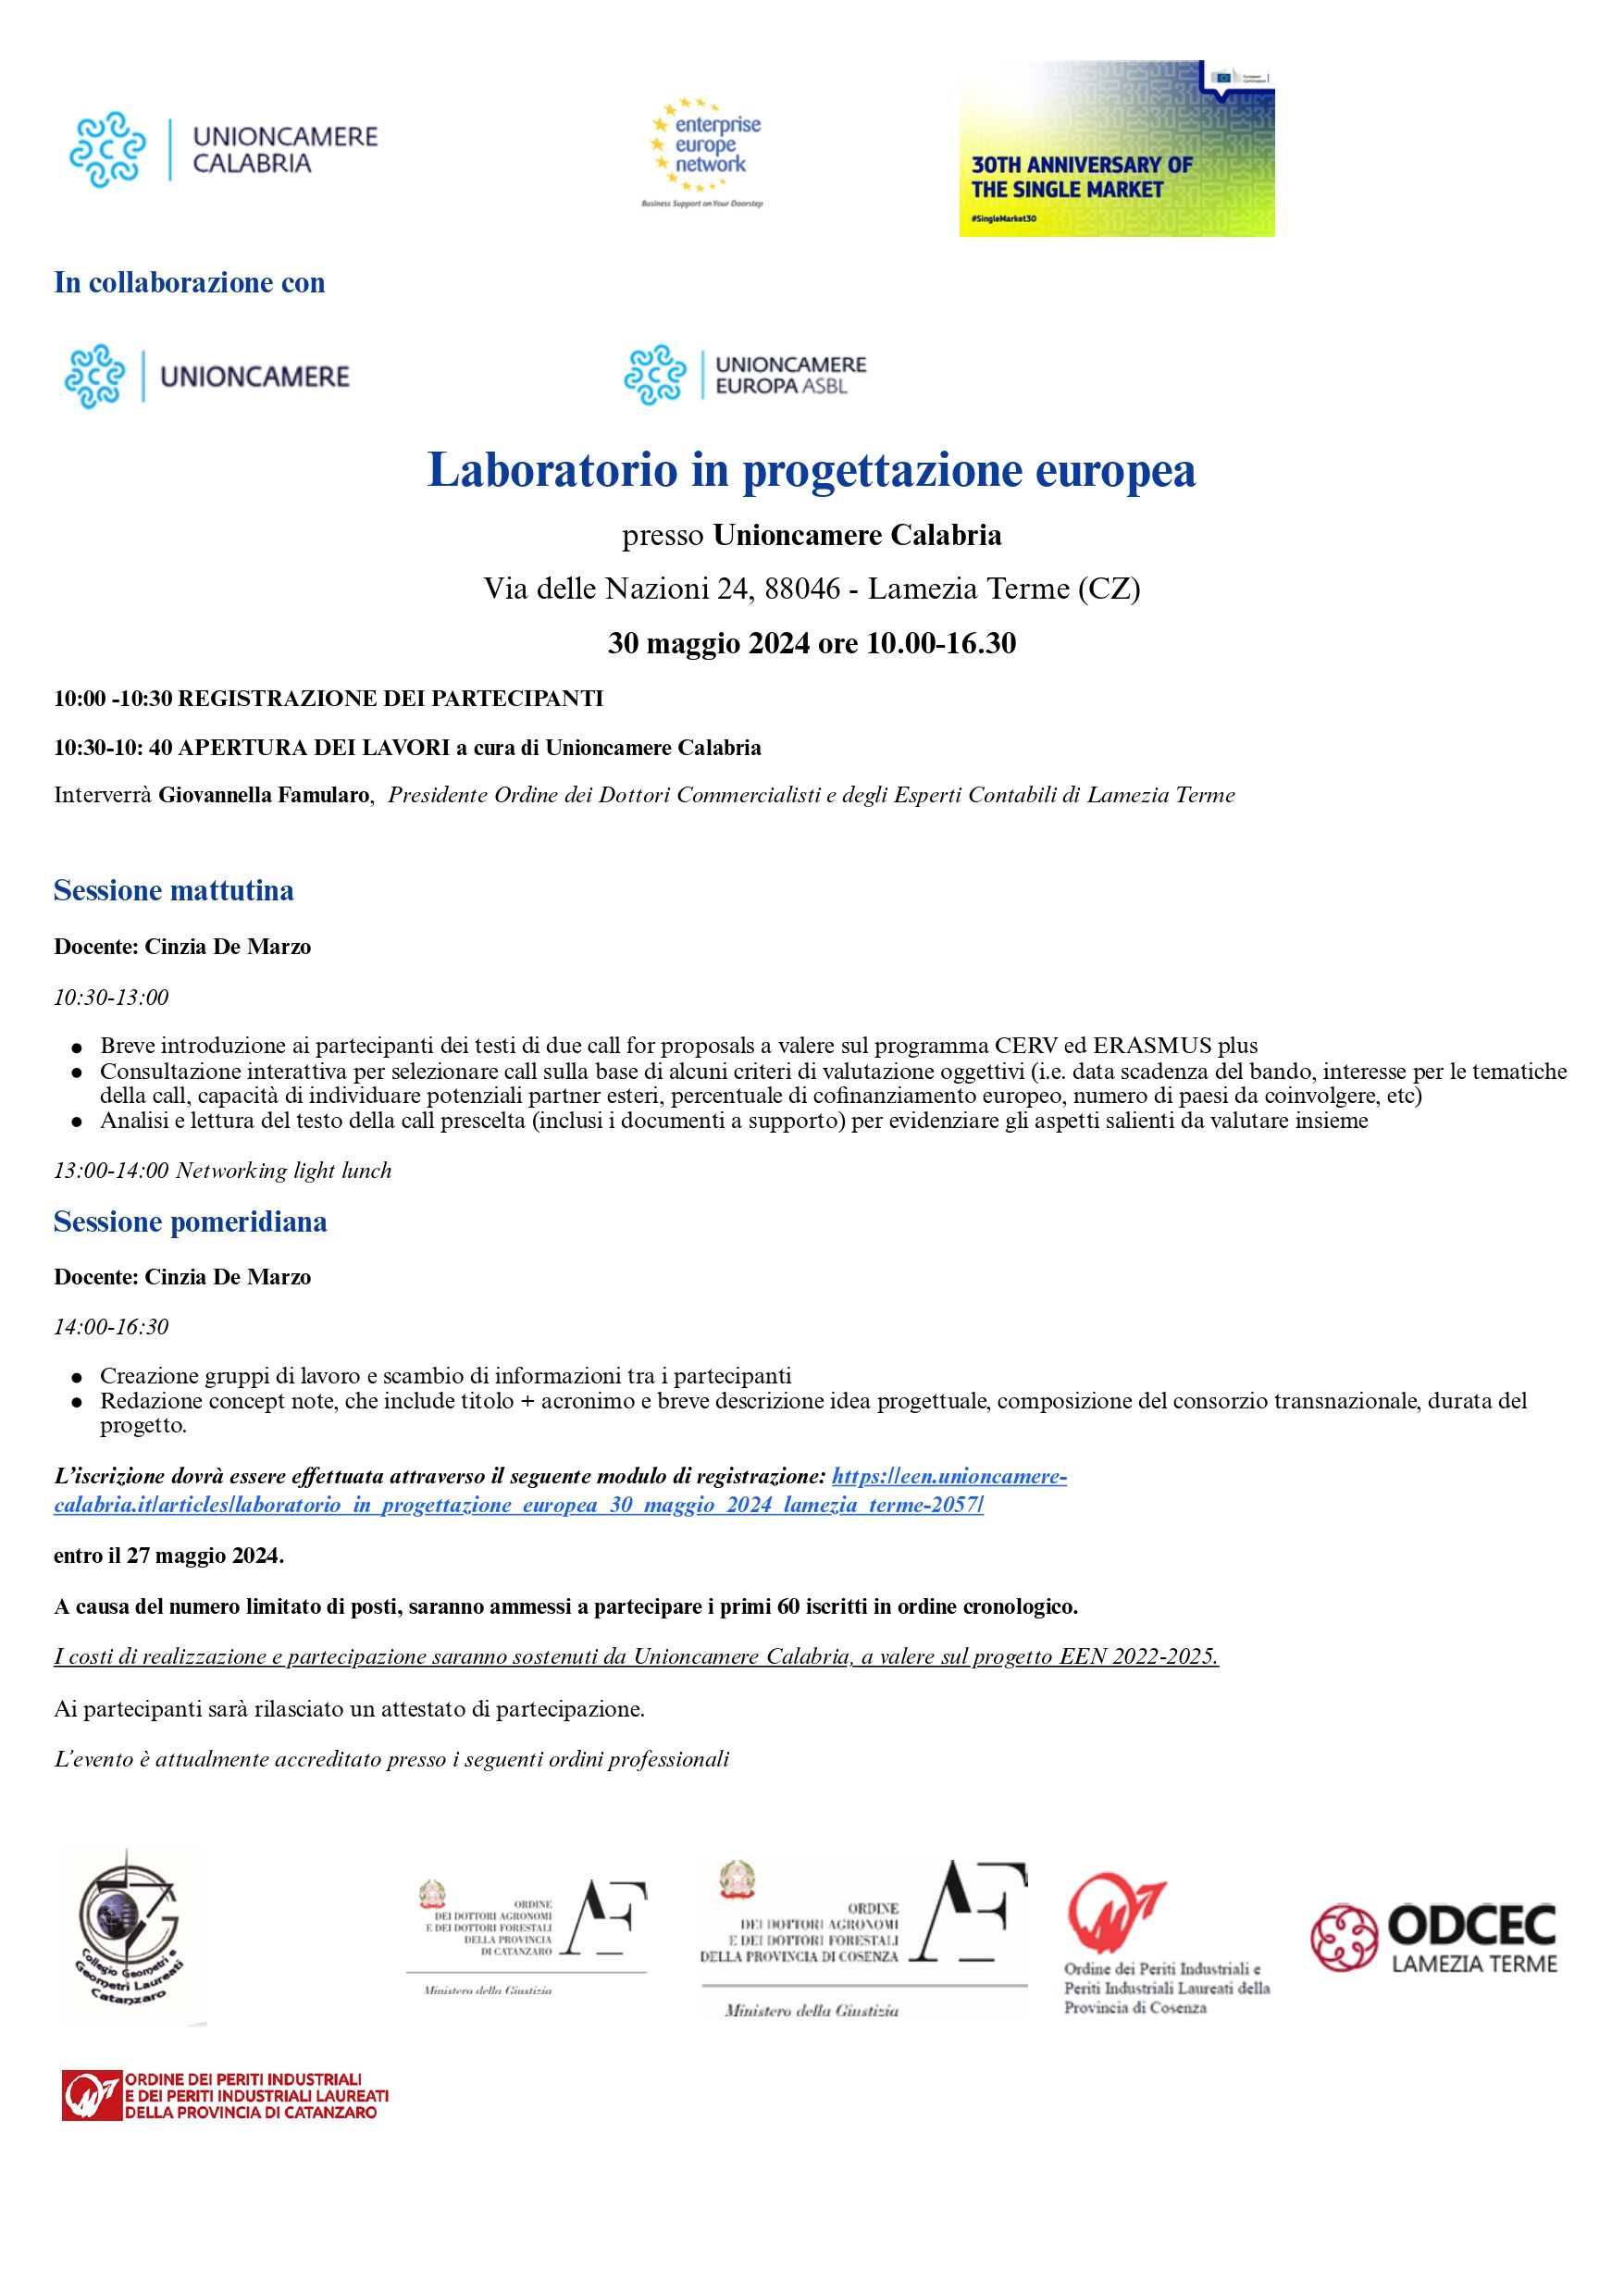 Laboratorio in progettazione europea -  30 maggio 2024 - Lamezia Terme